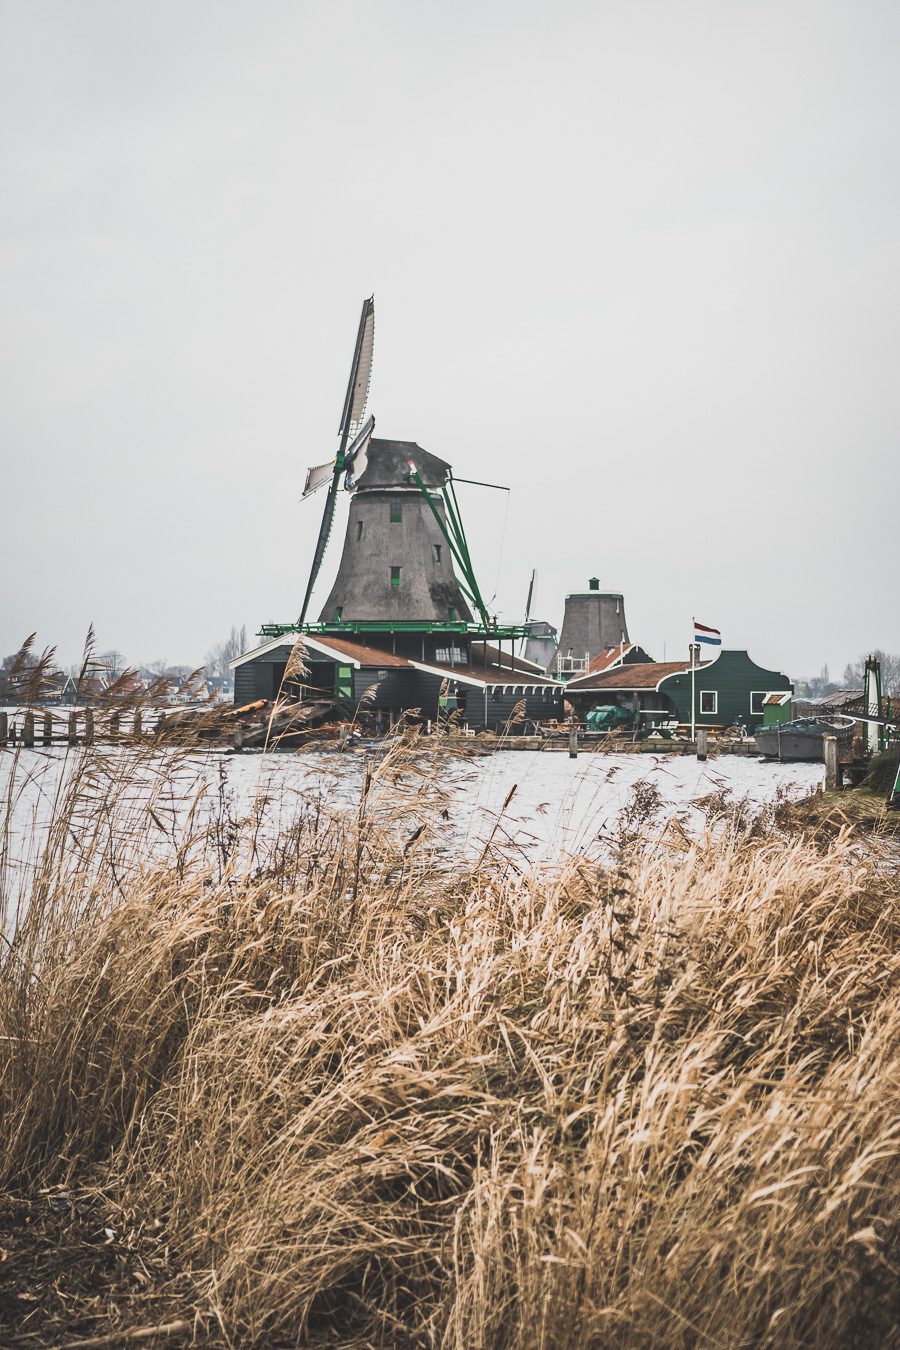 Le petit village néerlandais de Zaanse Schans est une fenêtre unique sur la vie et la culture néerlandaises. Situé juste à l'extérieur d'Amsterdam, ce charmant hameau abrite une collection de moulins à vent en bois traditionnels, de maisons historiques et d'espaces verts pittoresques. Une visite à Zaanse Schans est le moyen idéal pour découvrir l'atmosphère authentique des Pays-Bas. Zaanse Schans netherlands / Zaanse Schans photography / Zaanse Schans windmill